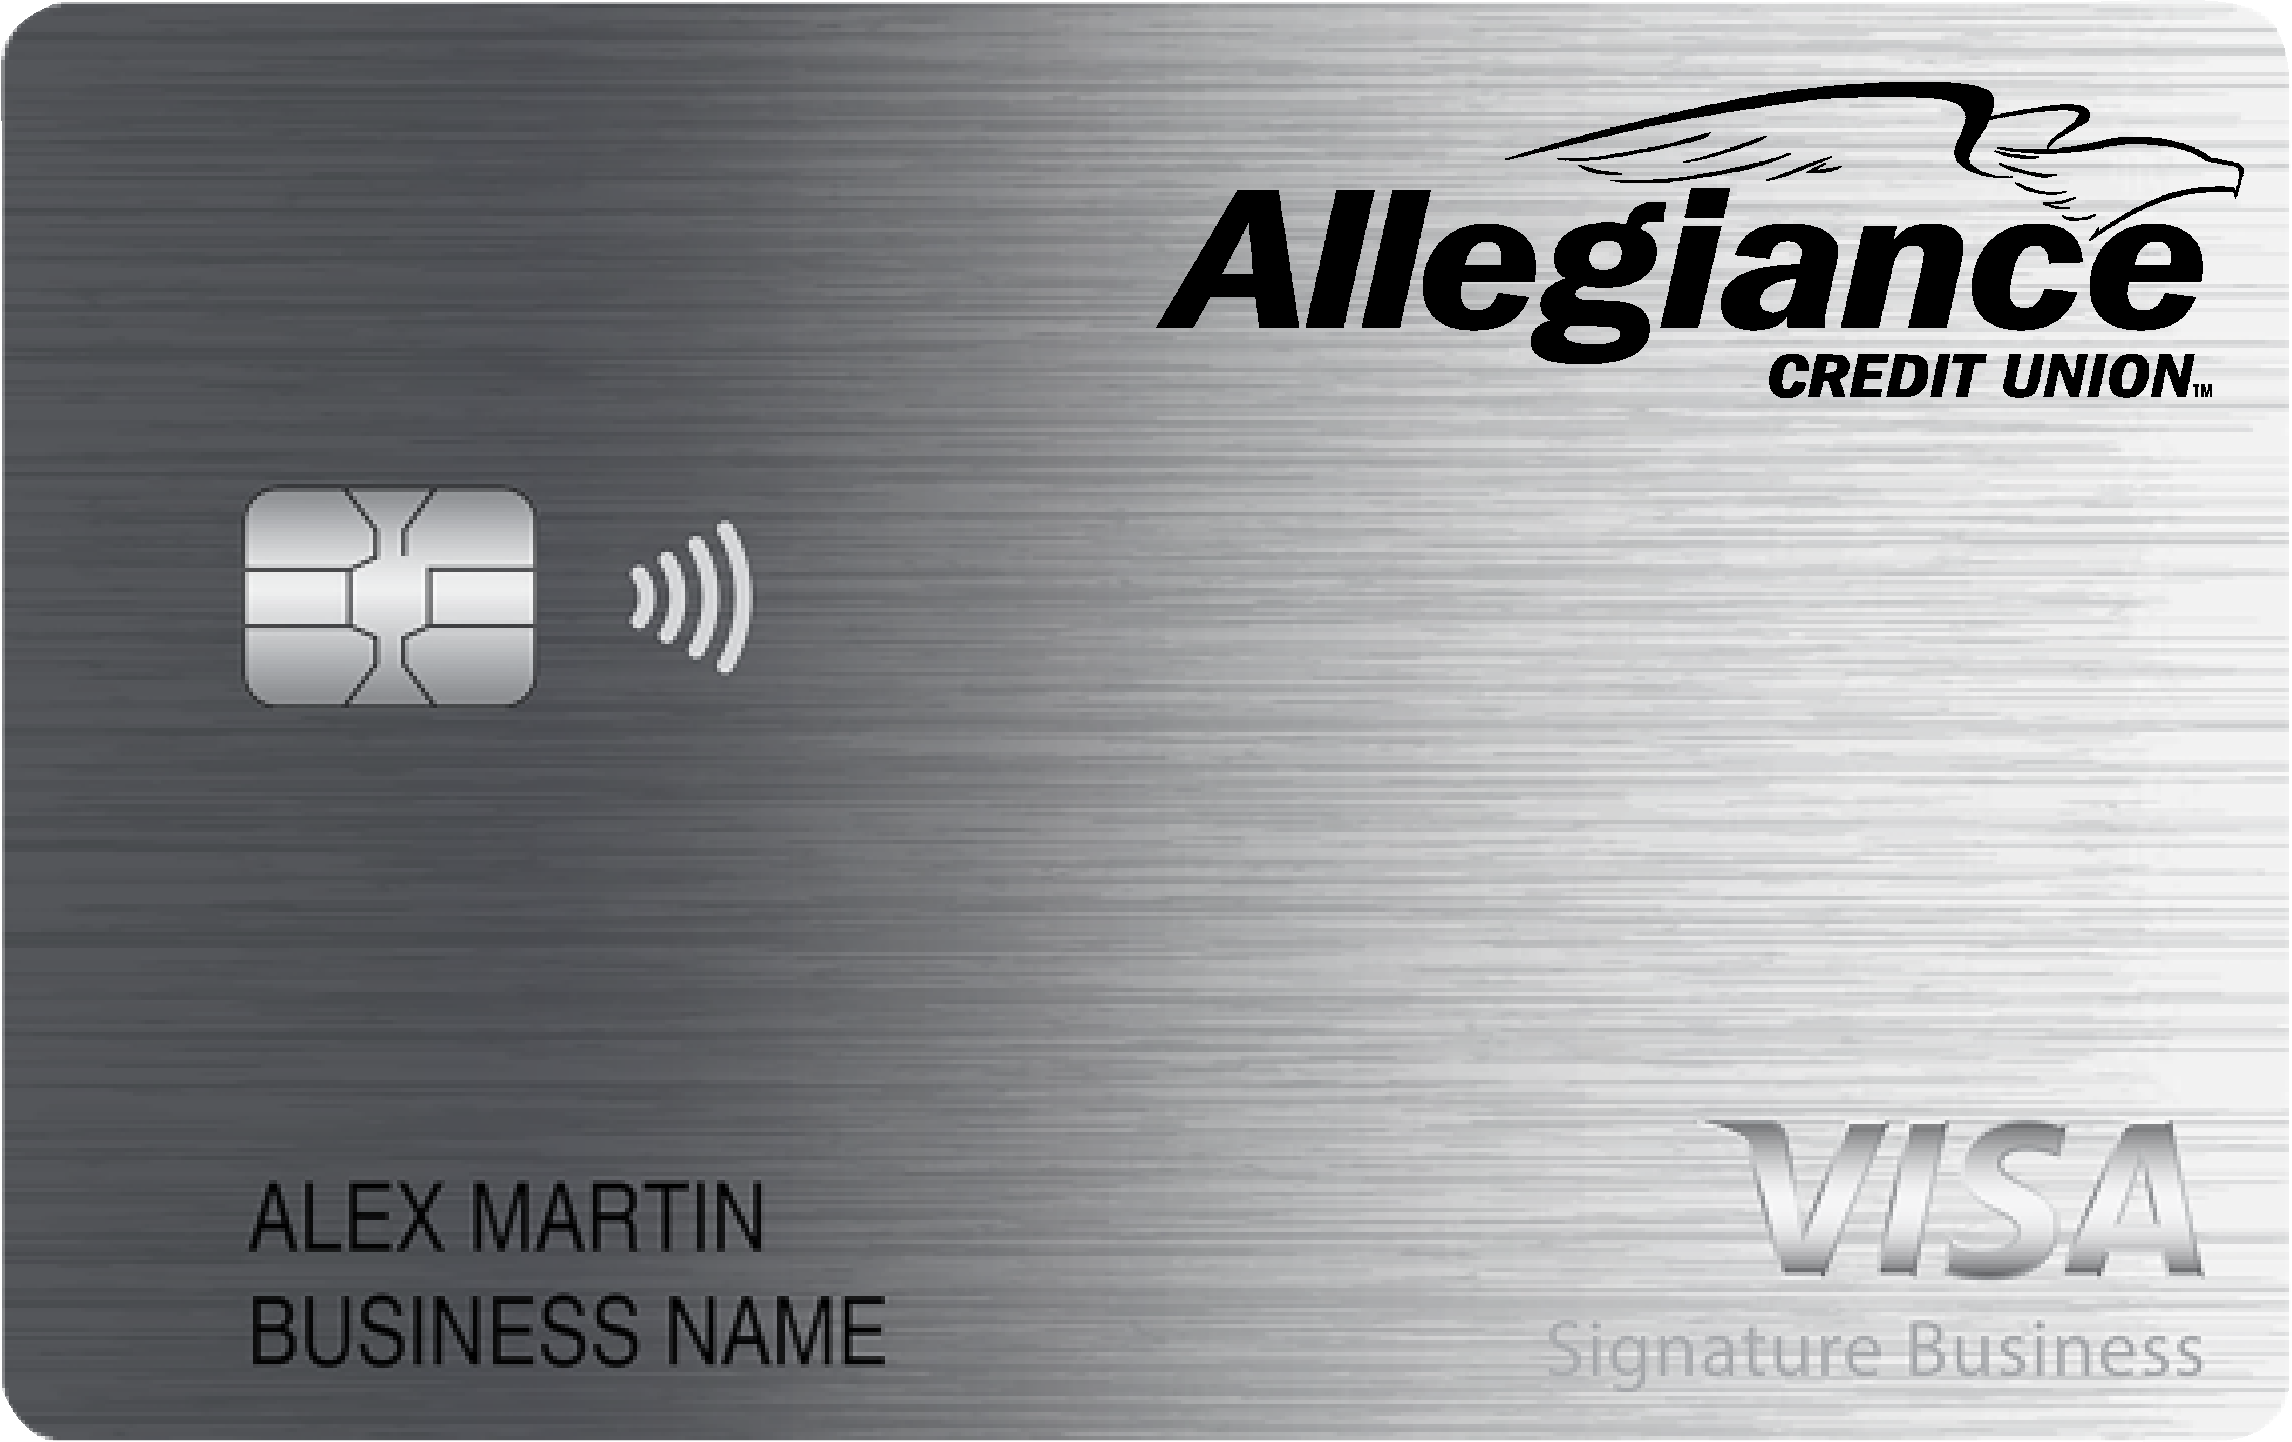 Allegiance Credit Union Smart Business Rewards Card